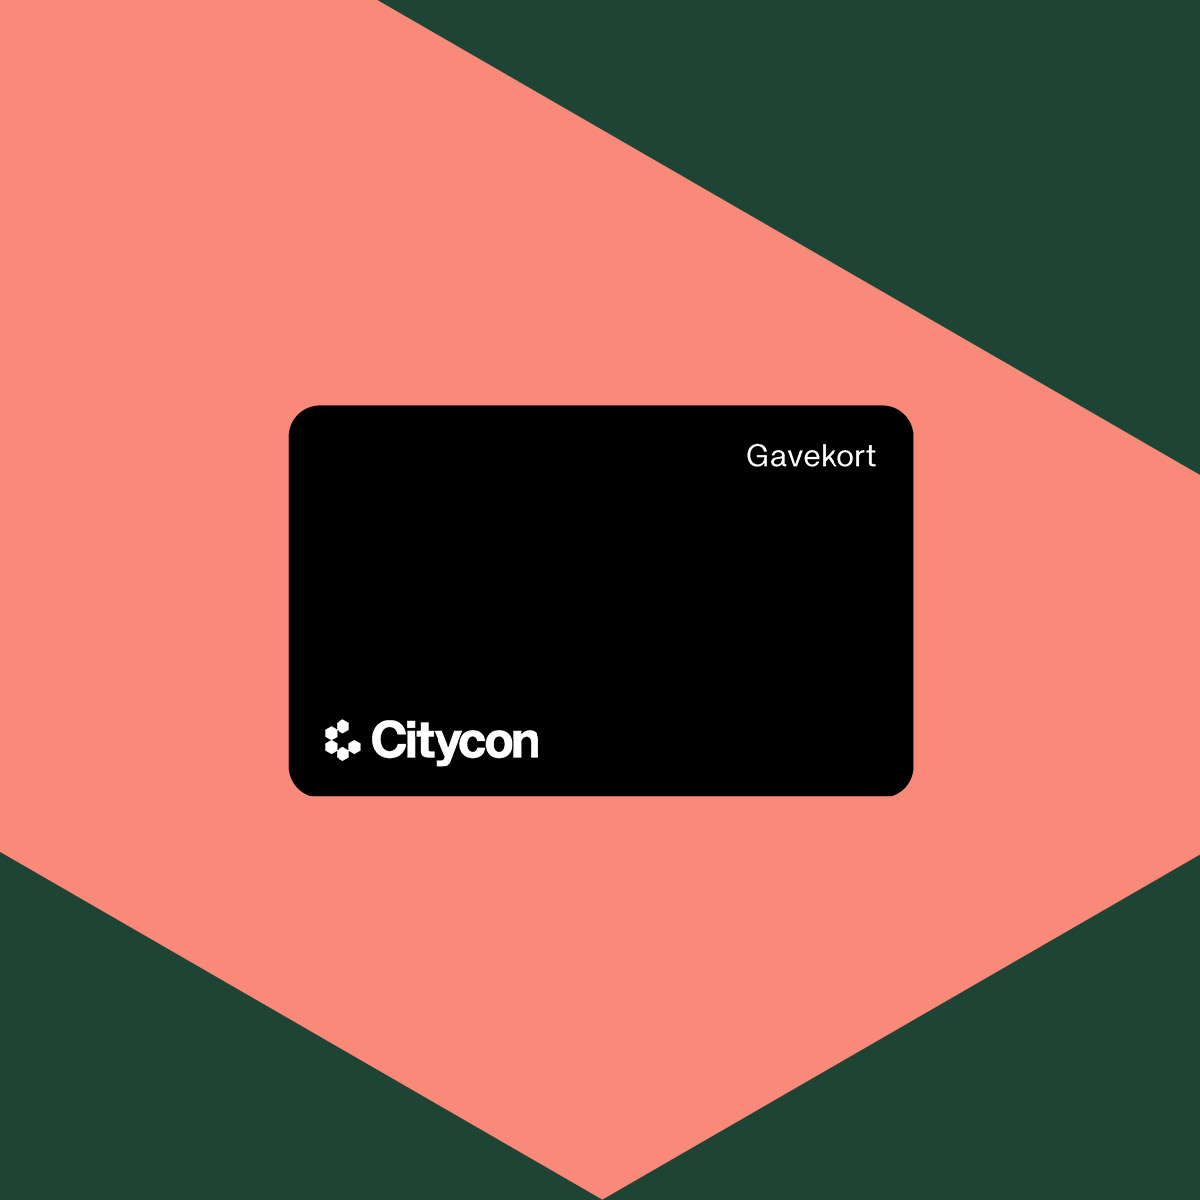 Citycon_1752_jul-taktisk_digital_gavekort_lift_1200x1200px.jpg